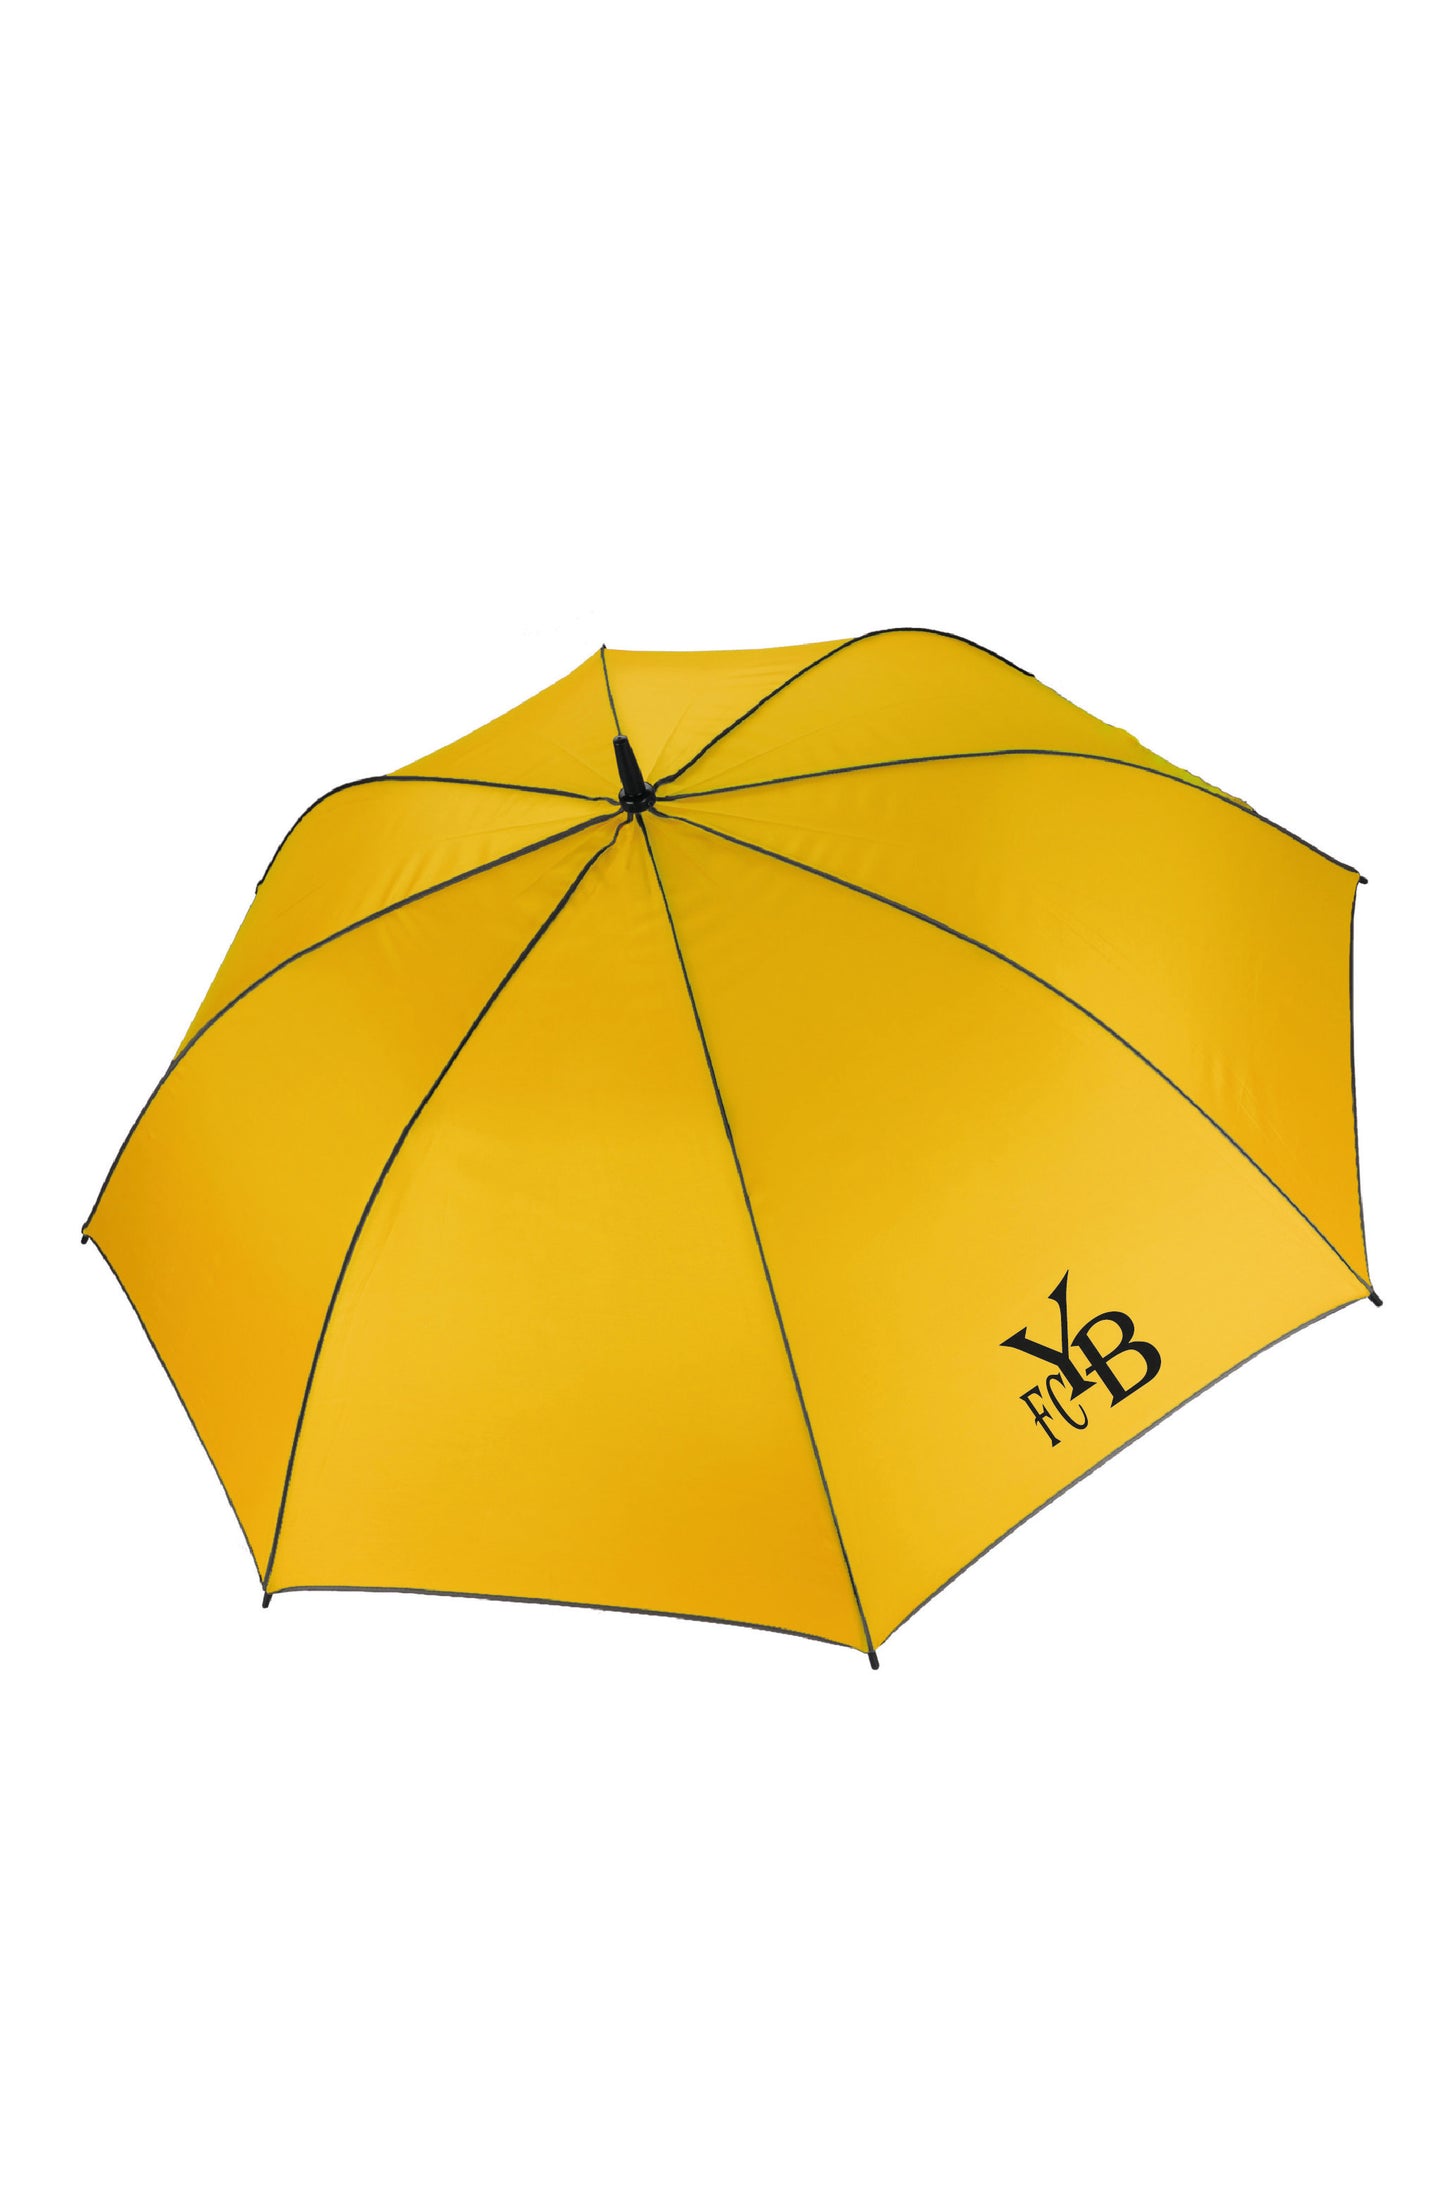 Parapluie automatique 125cm - FCYB (KI2006)